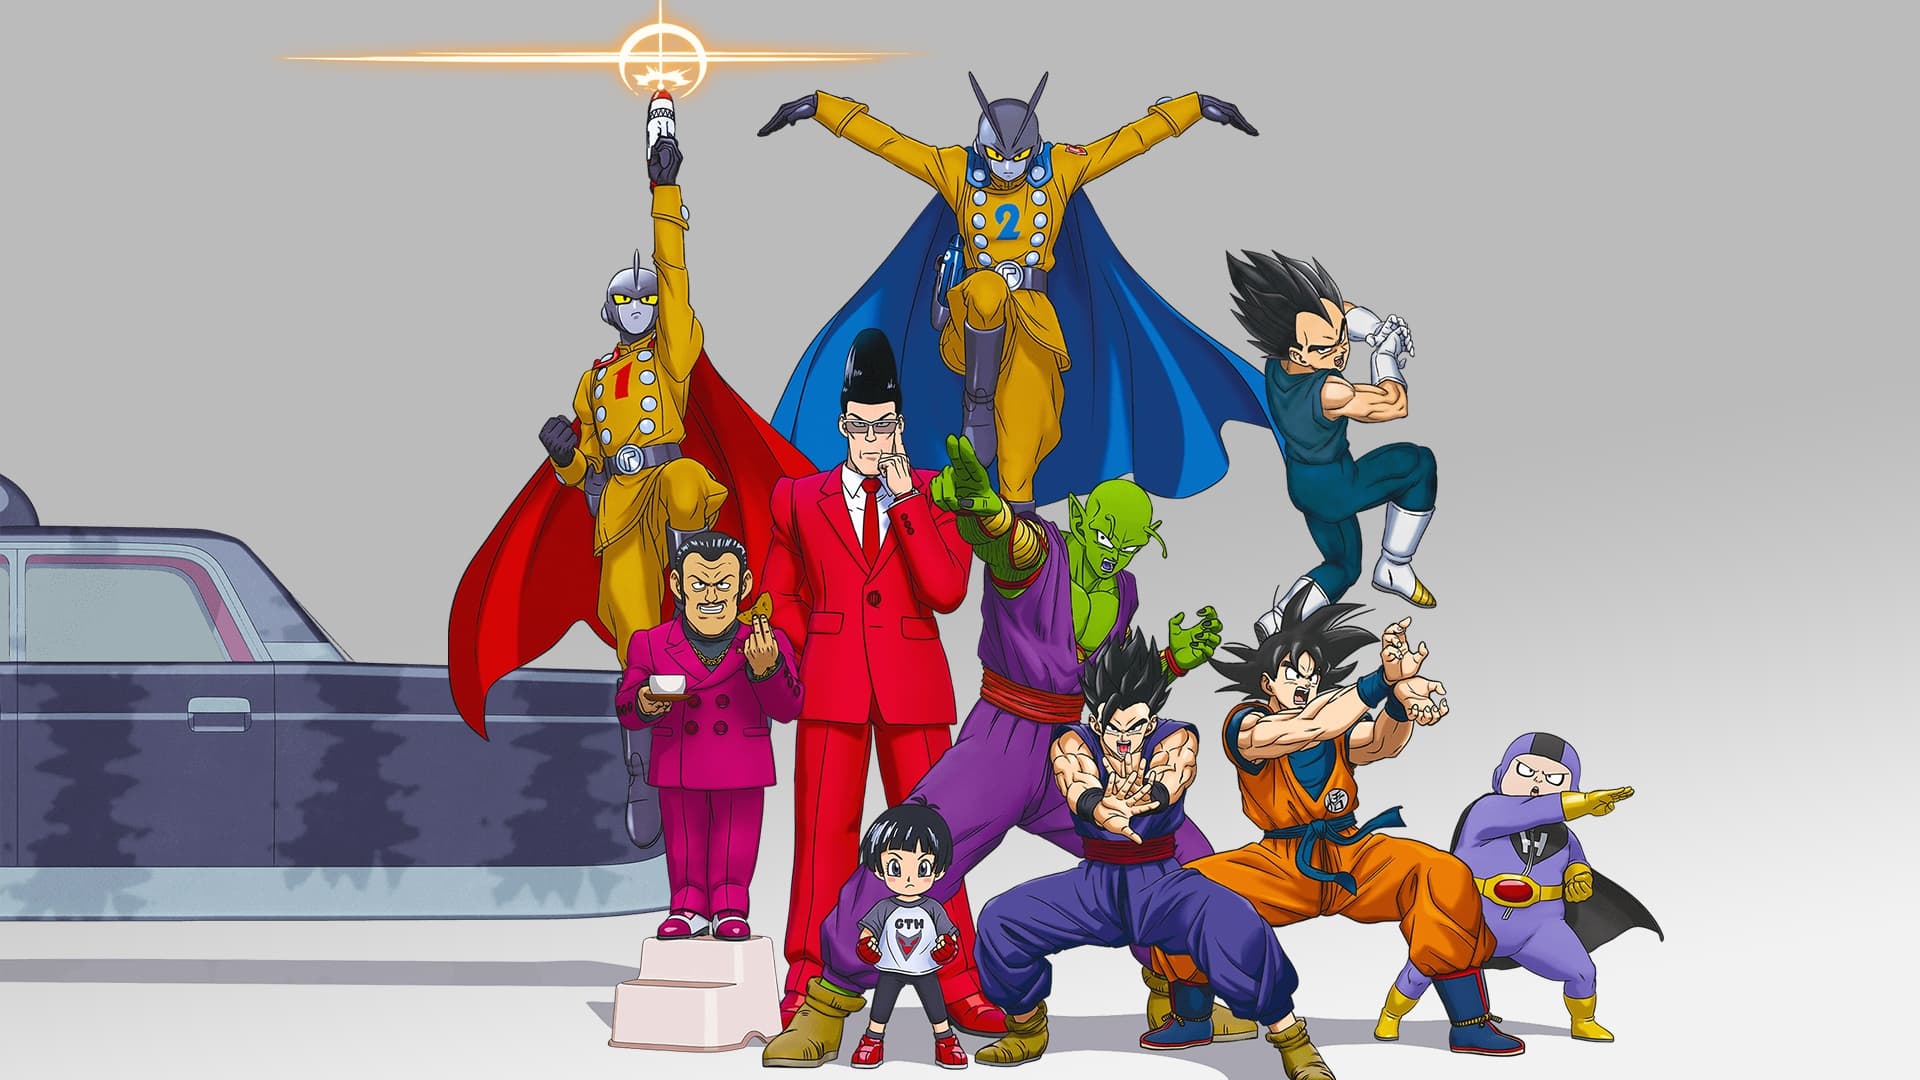 დრაკონის მარგალიტი სუპერი: სუპერგმირები |  Dragon Ball Super: Super Hero